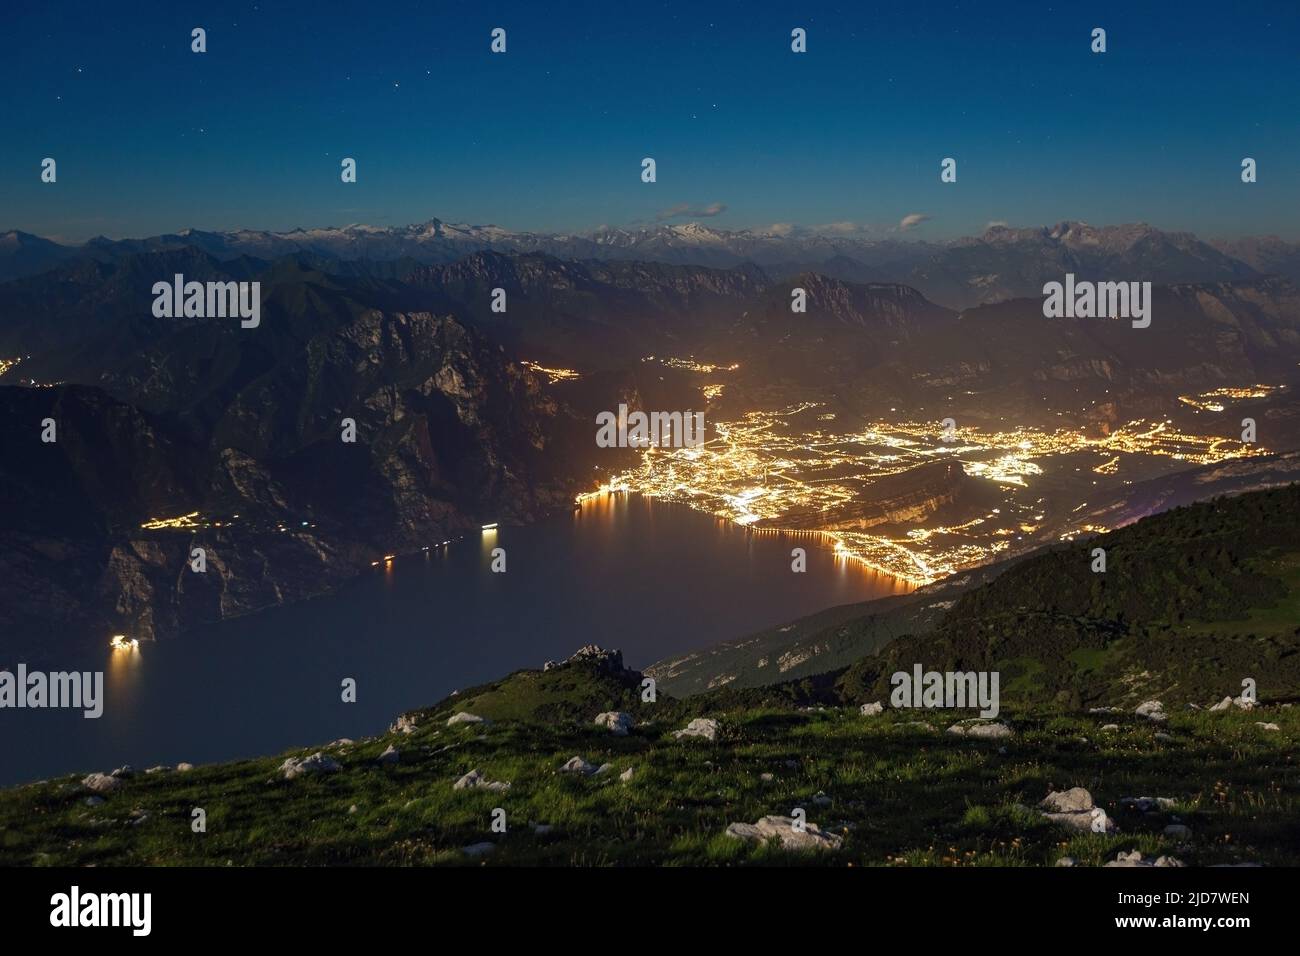 Luz de la Luna en el Lago de Garda desde la cima del Monte Altissimo di Nago. Luces nocturnas de la ciudad de Riva del Garda. Trentino. Prealpi Gardesane. Italia. Foto de stock